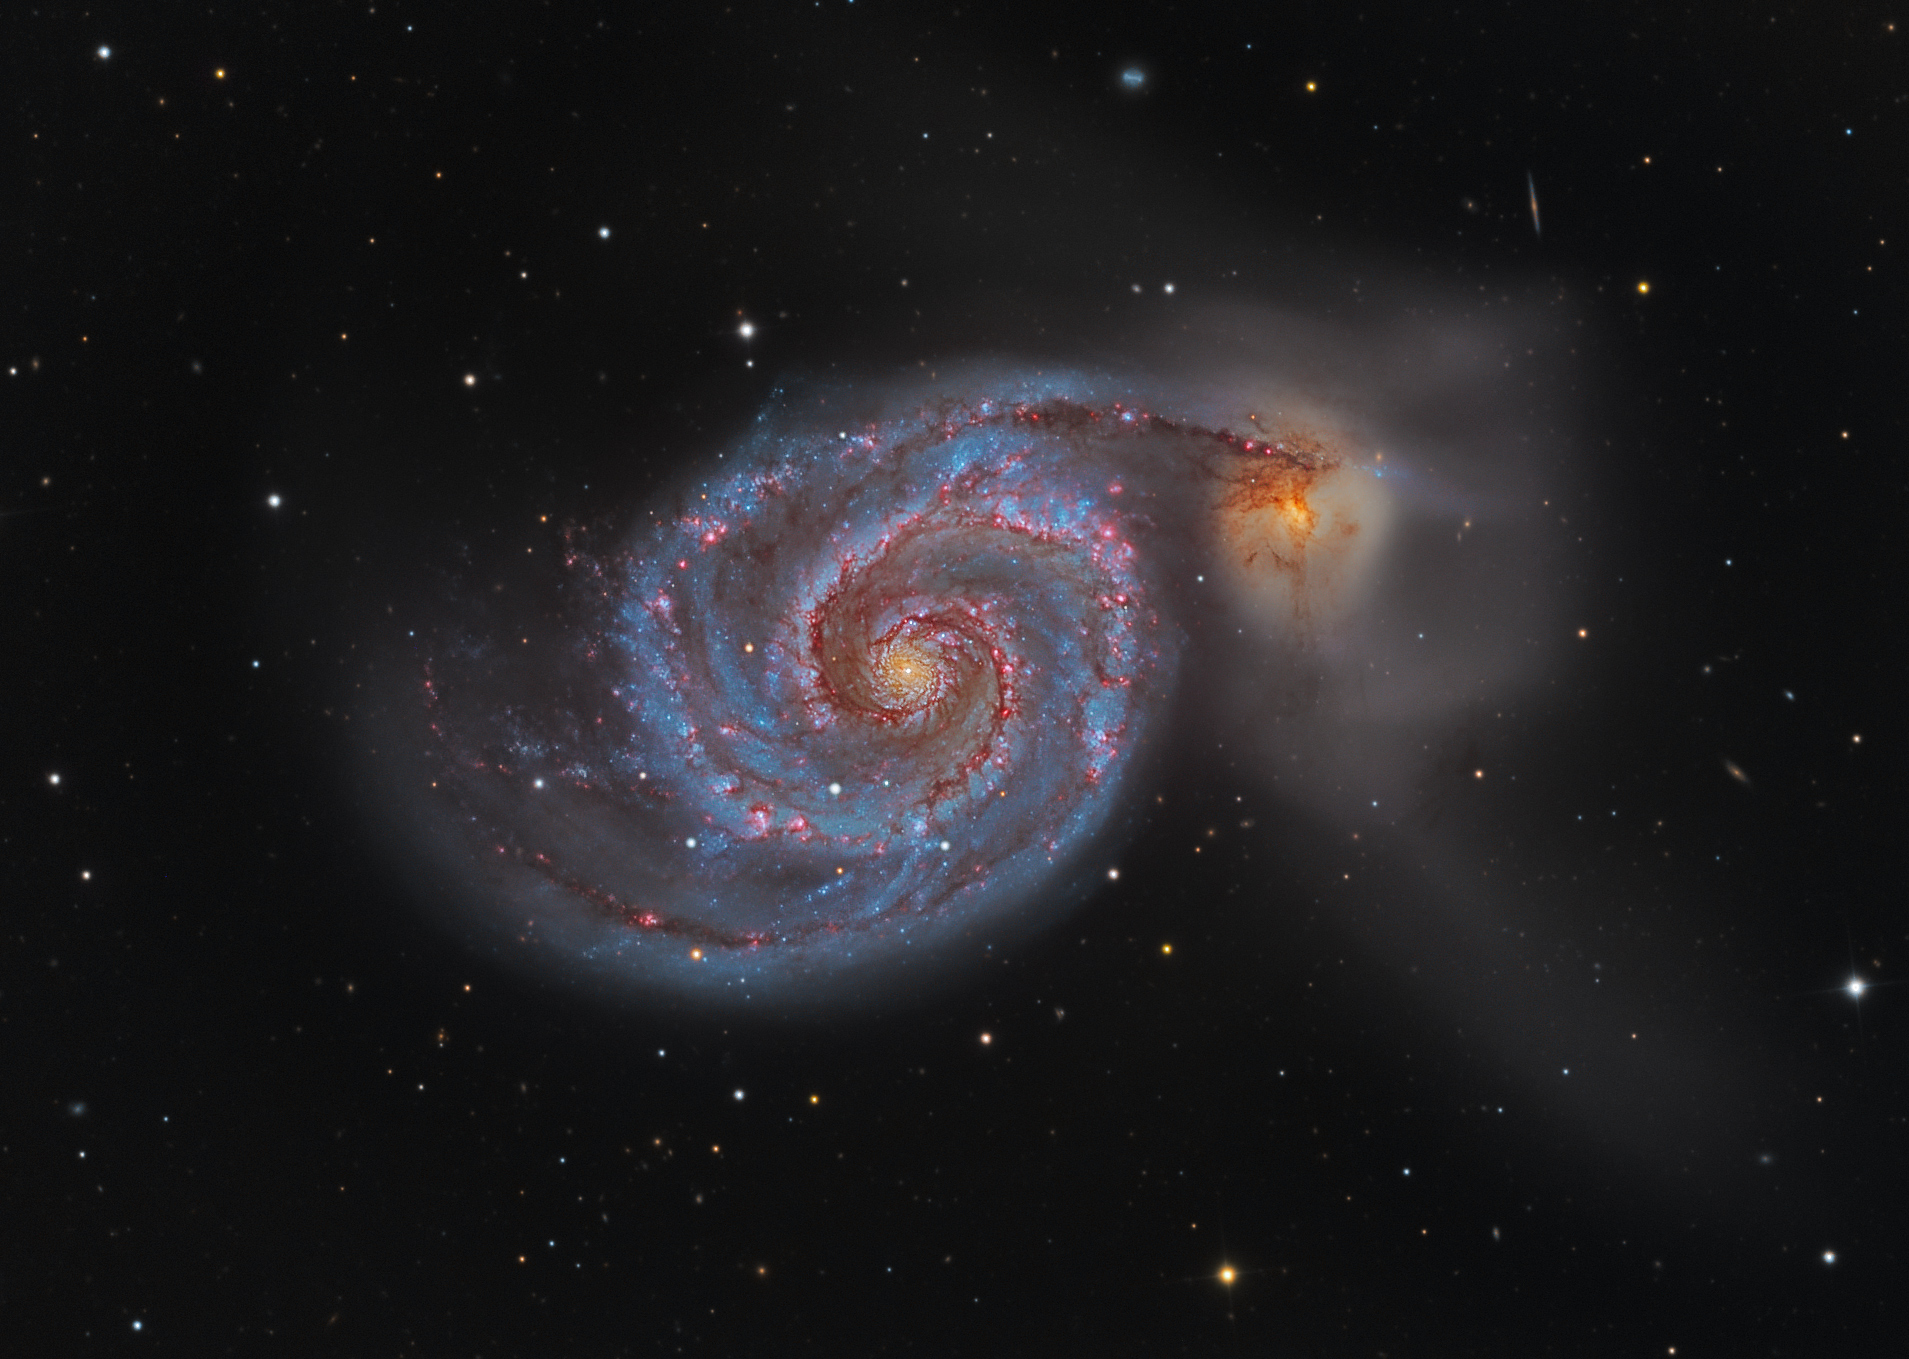 Стационарные звезды. Галактика водоворот м51. М51 водоворот. Галактика водоворот в созвездии гончих псов. Галактика водоворот m51 и NGC 5195.